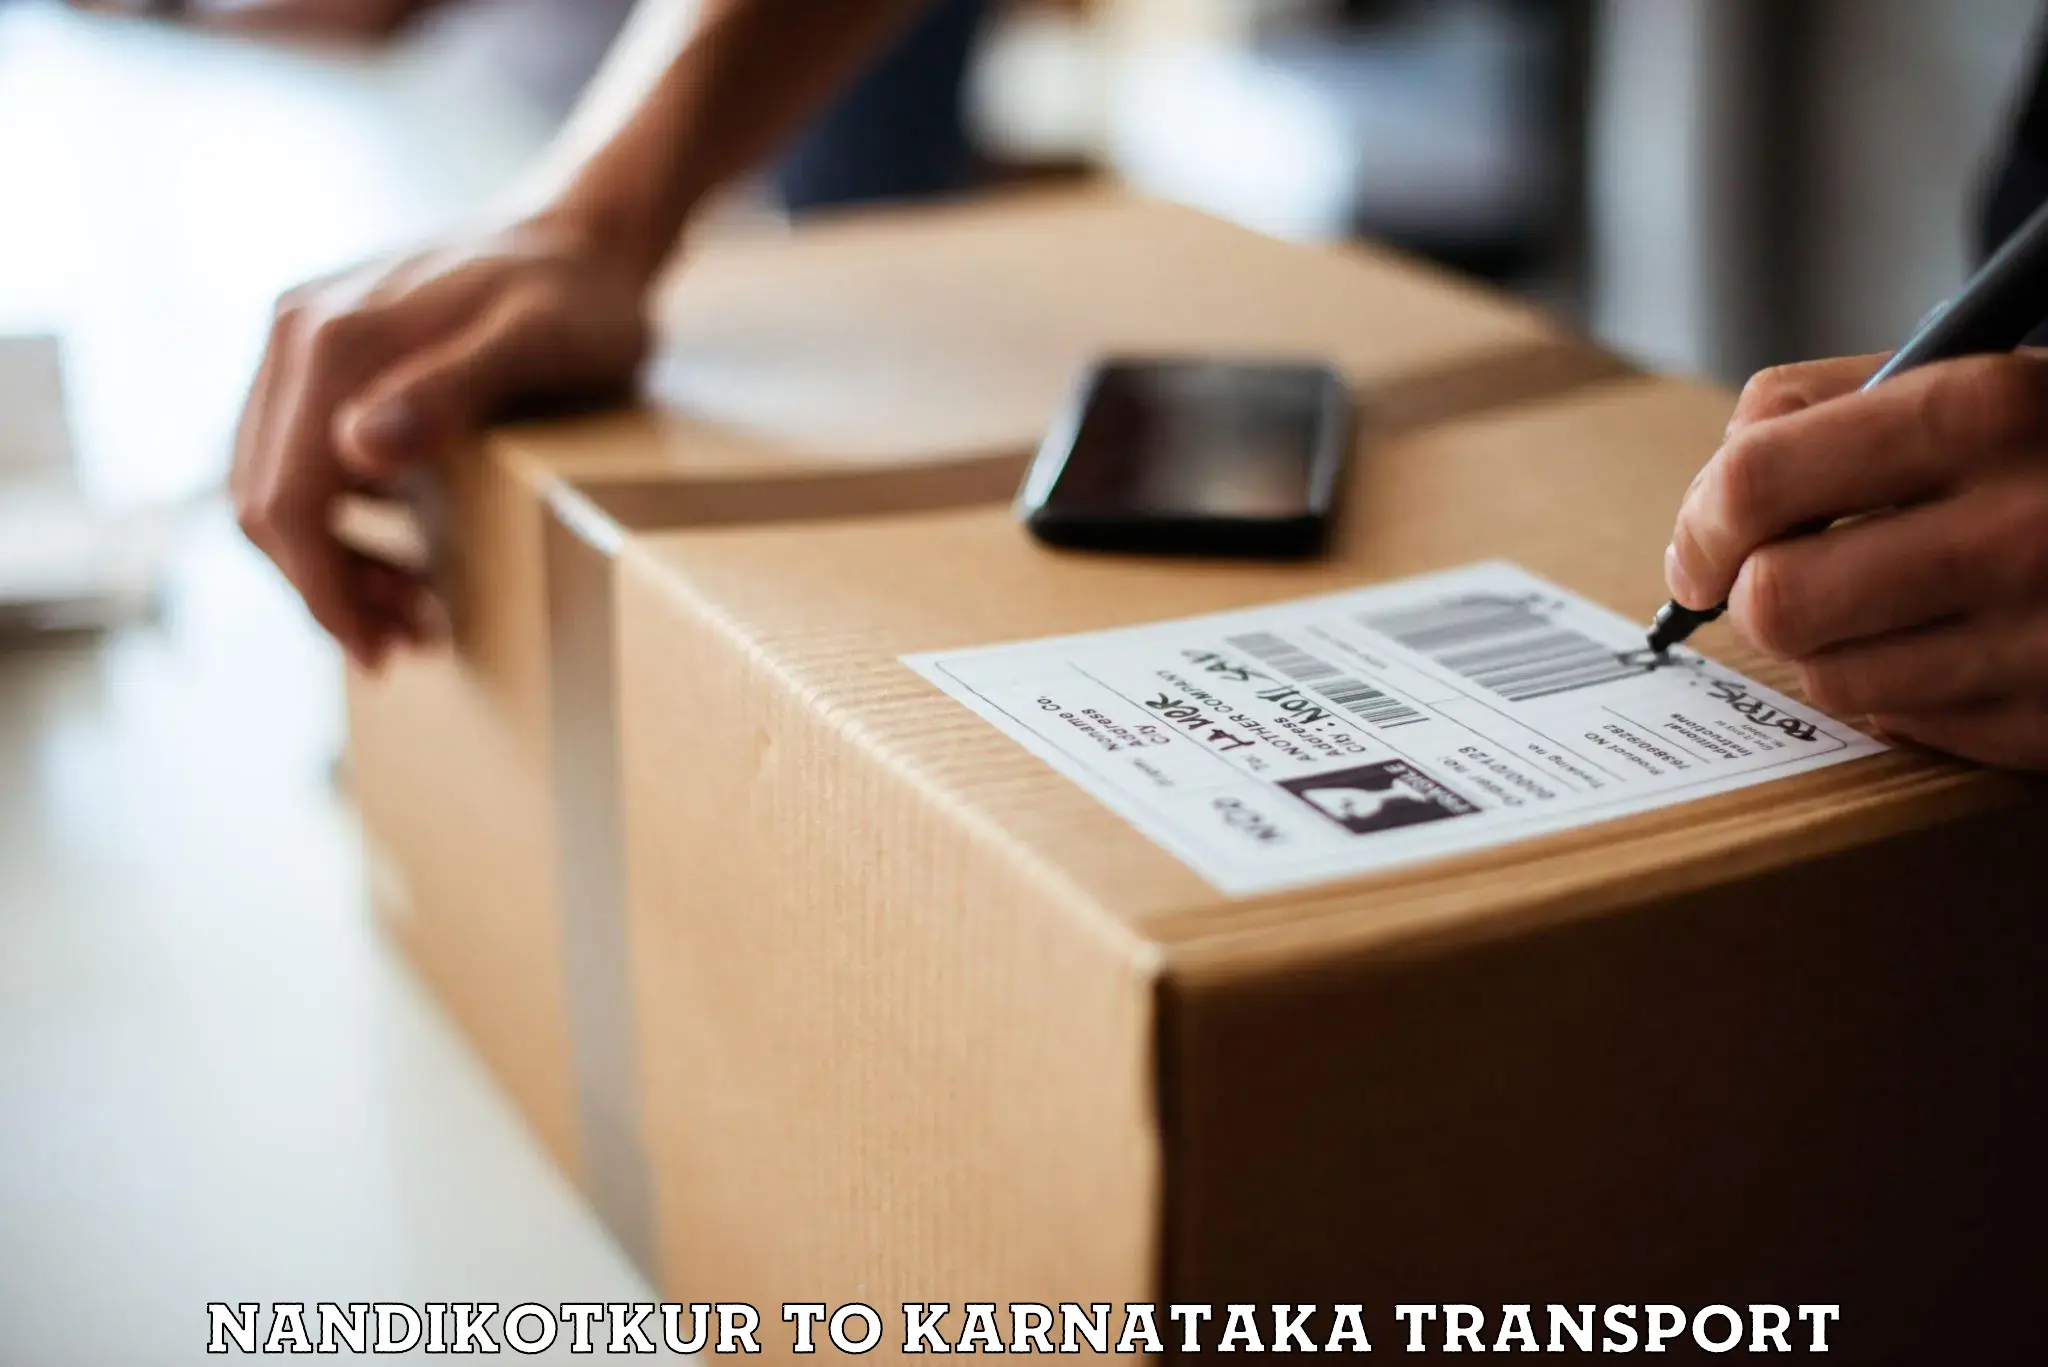 Daily parcel service transport Nandikotkur to Karnataka